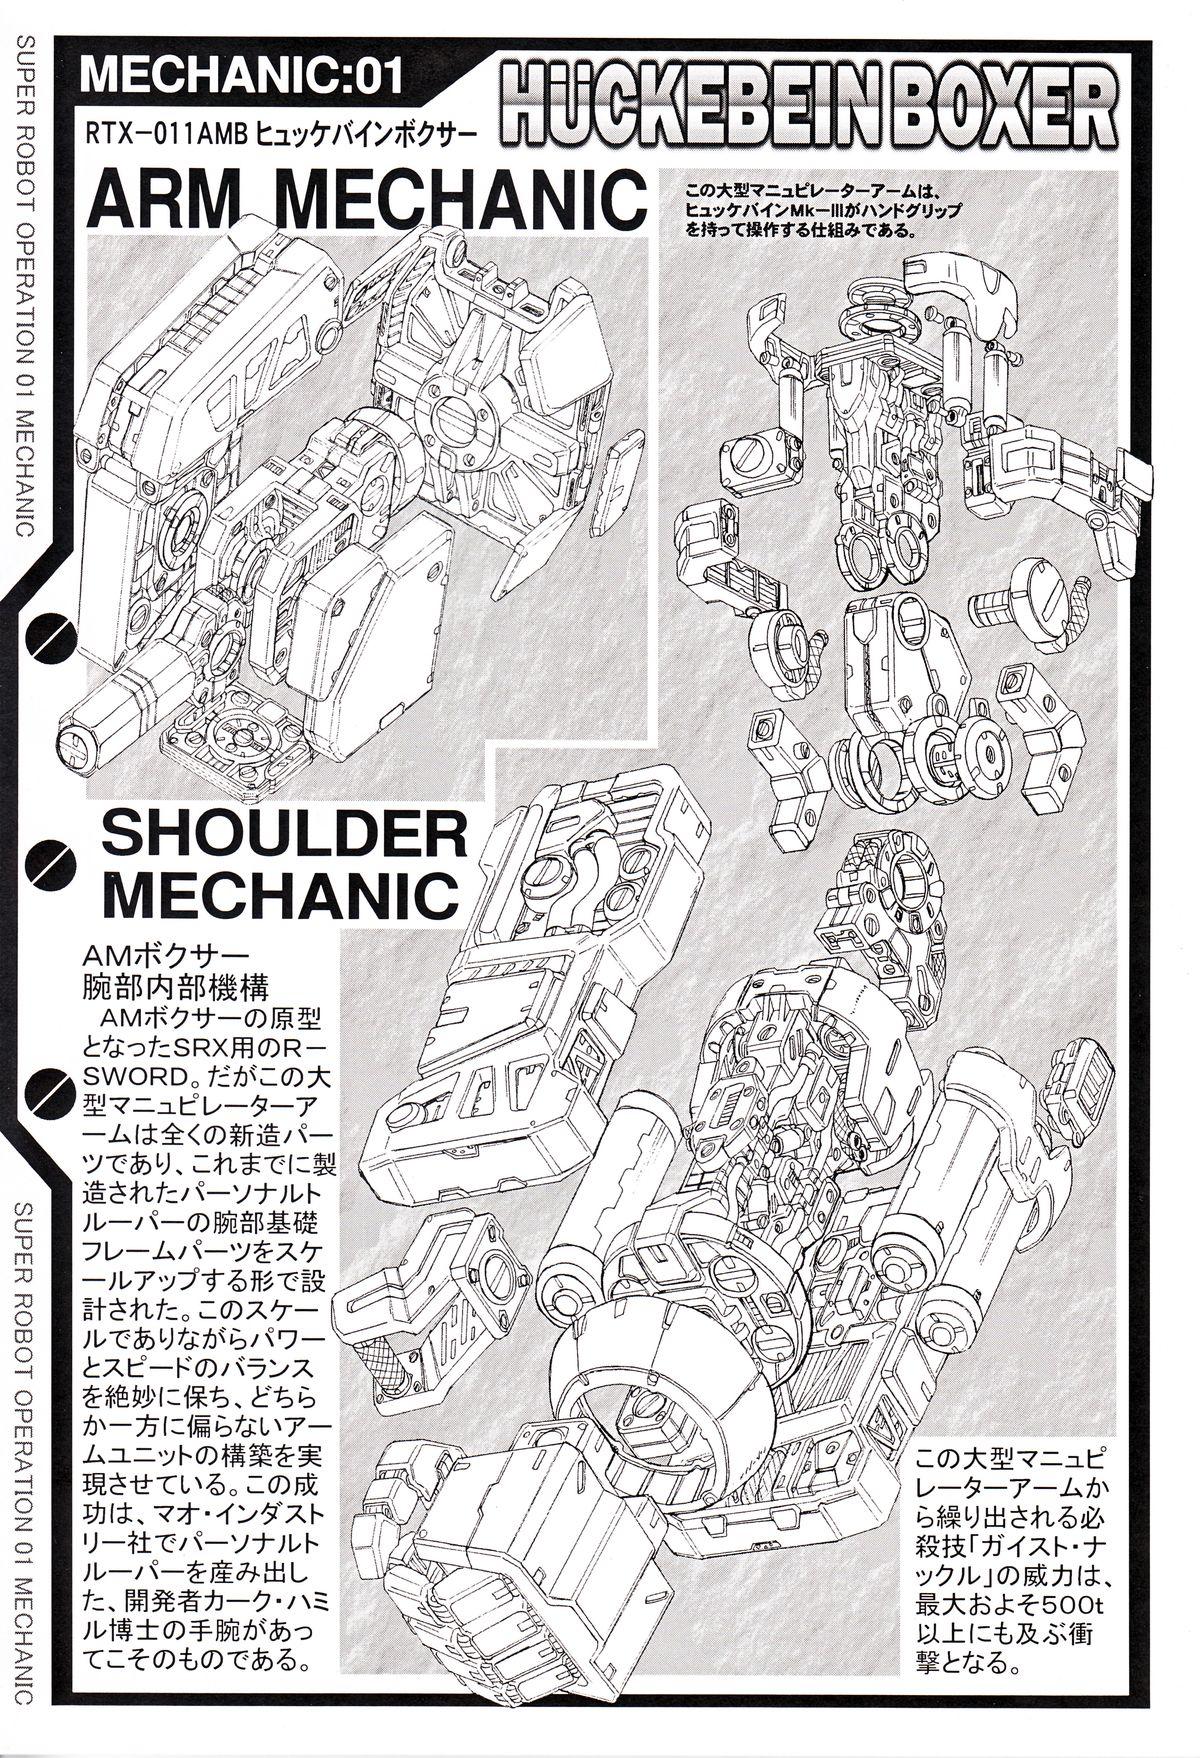 Whore SUPER ROBOT OPERATION 01 - Super robot wars Gaogaigar Full metal panic Patlabor Voltes v Blue comet spt layzner Onlyfans - Page 11